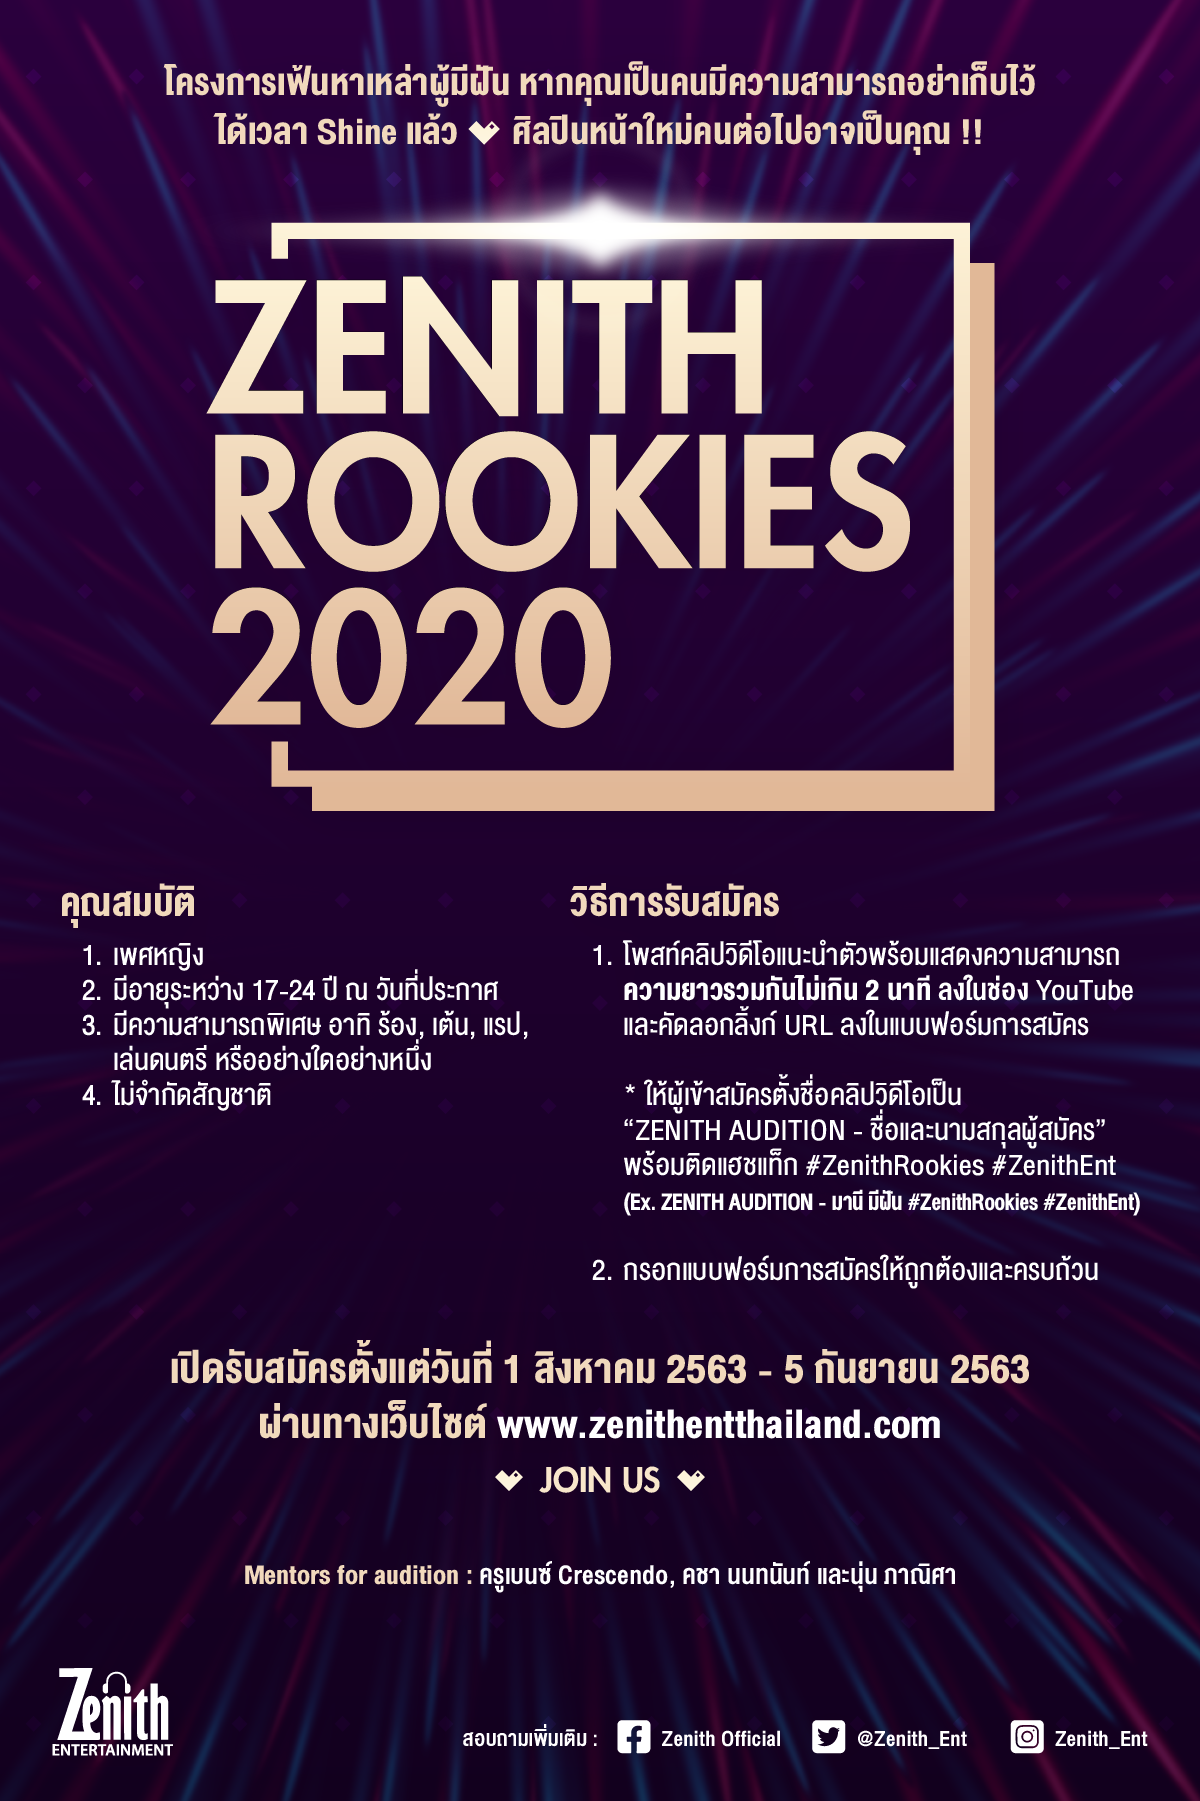 ซีนิธ เอ็นเตอร์เทนเมนต์ ประกาศโปรเจกต์ 'Zenith Rookies 2020 เฟ้นหา!! สาวผู้มีฝัน.คว้าโอกาส เป็นศิลปินในสังกัด